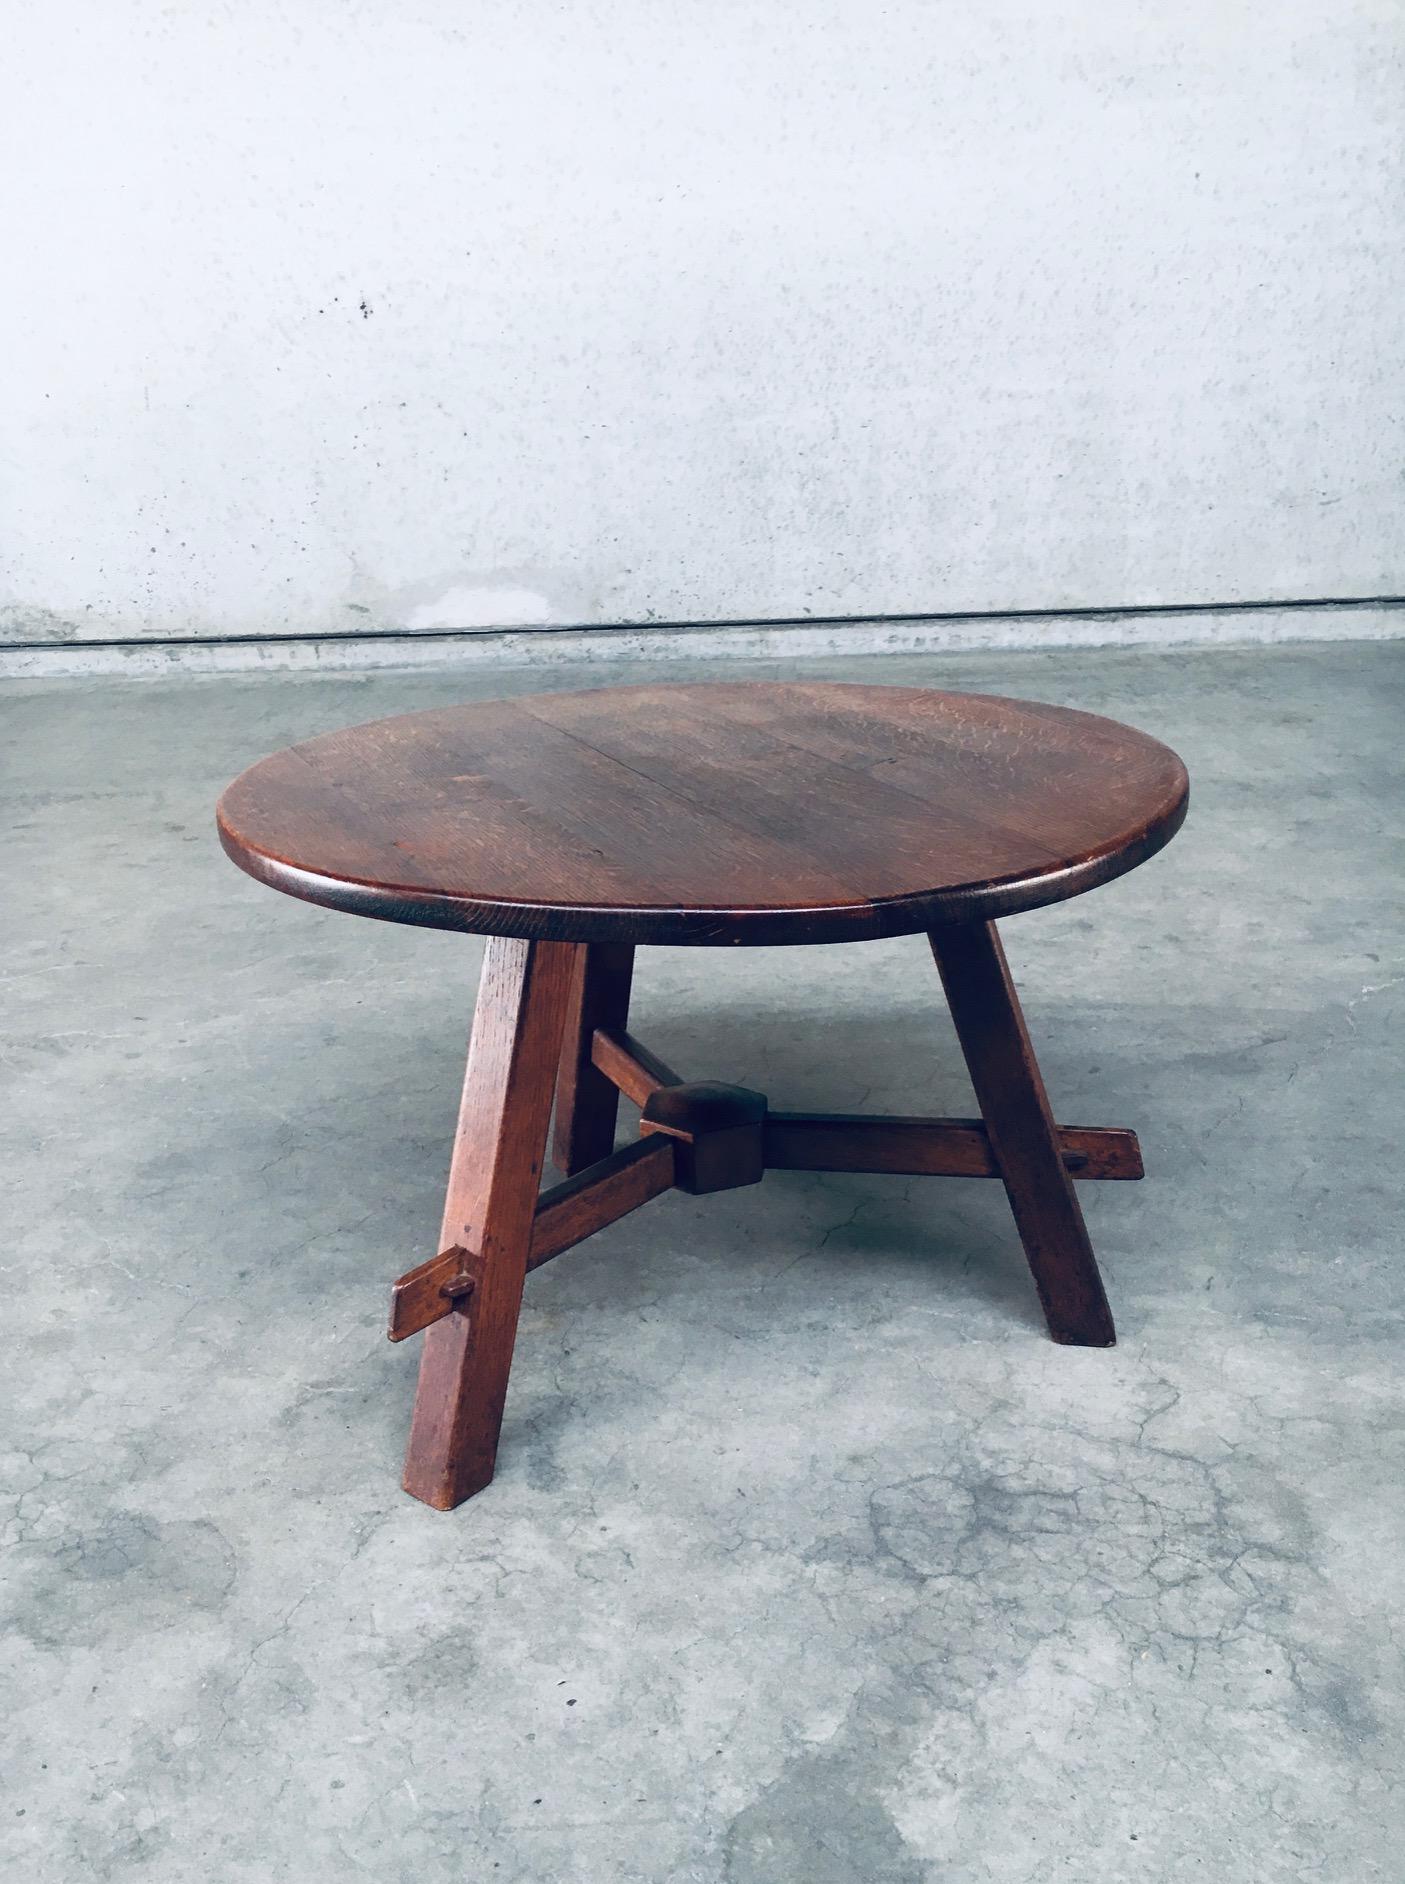 Vintage Rustic Handcrafted Design Oak Side or small Coffee Table. Fabriqué en France, années 1940. Table d'appoint ronde ou petite table basse en chêne massif teinté foncé. Pieds de trépieds avec connexion centrale. En très bon état, tout à fait